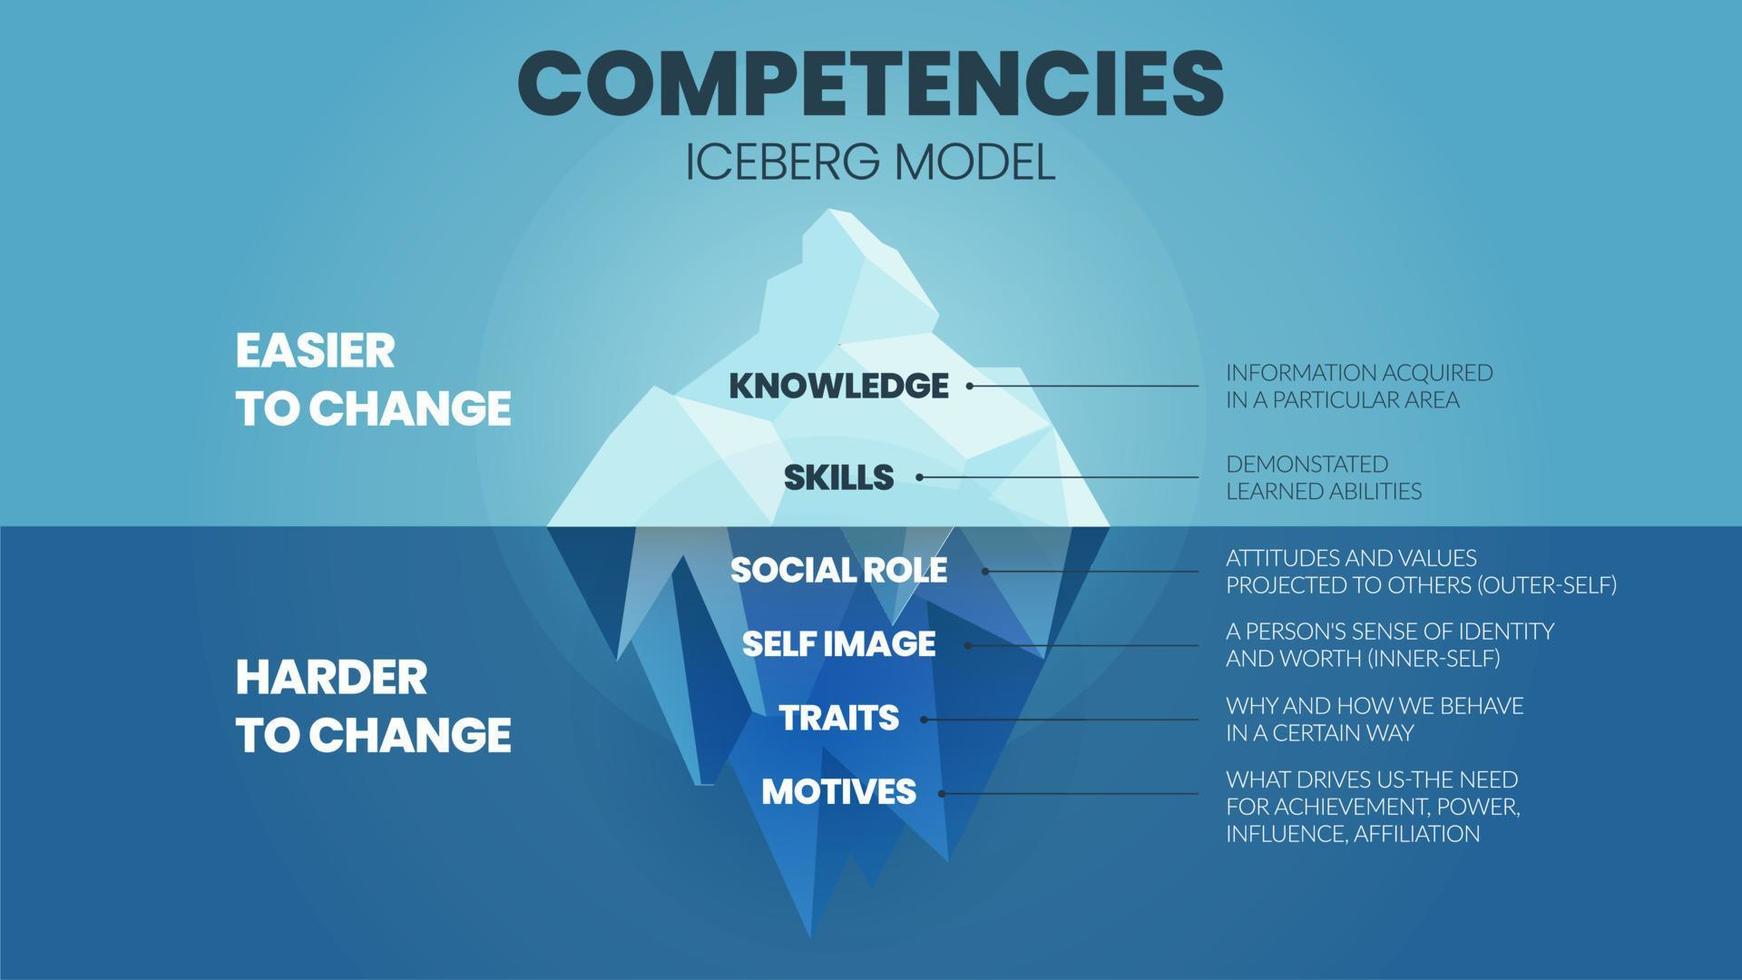 une illustration vectorielle des compétences iceberg model hrd concept a 2 éléments d'amélioration des compétences des employés supérieur est la connaissance et les compétences faciles à changer mais l'attribut sous l'eau est plus difficile vecteur